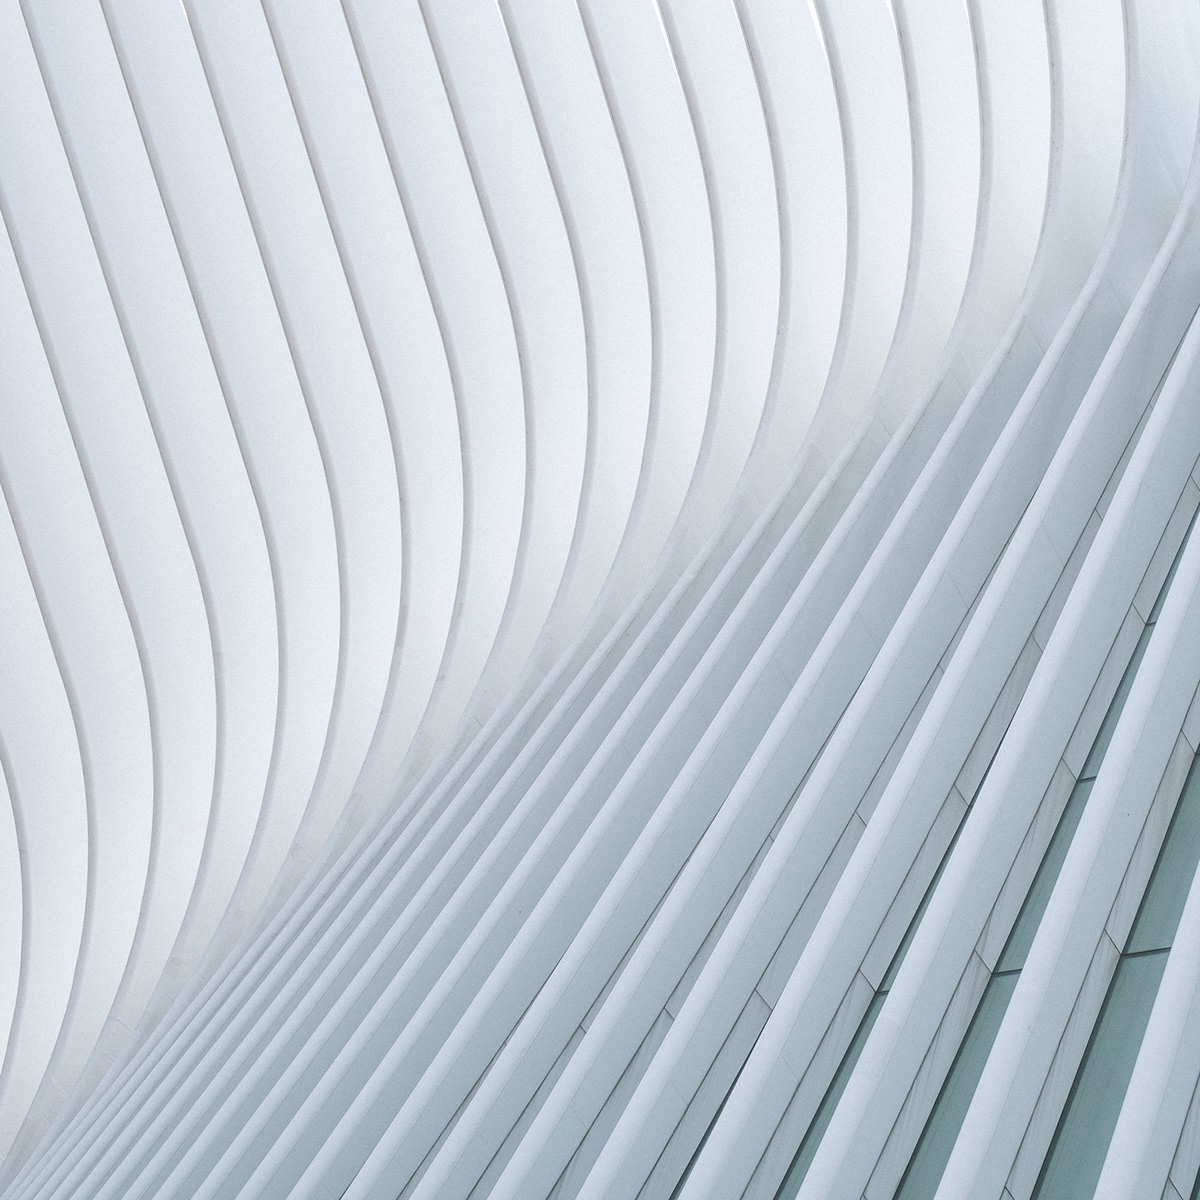 Oculus New York architecture Manhattan composition modern fine art united states World Trade Center